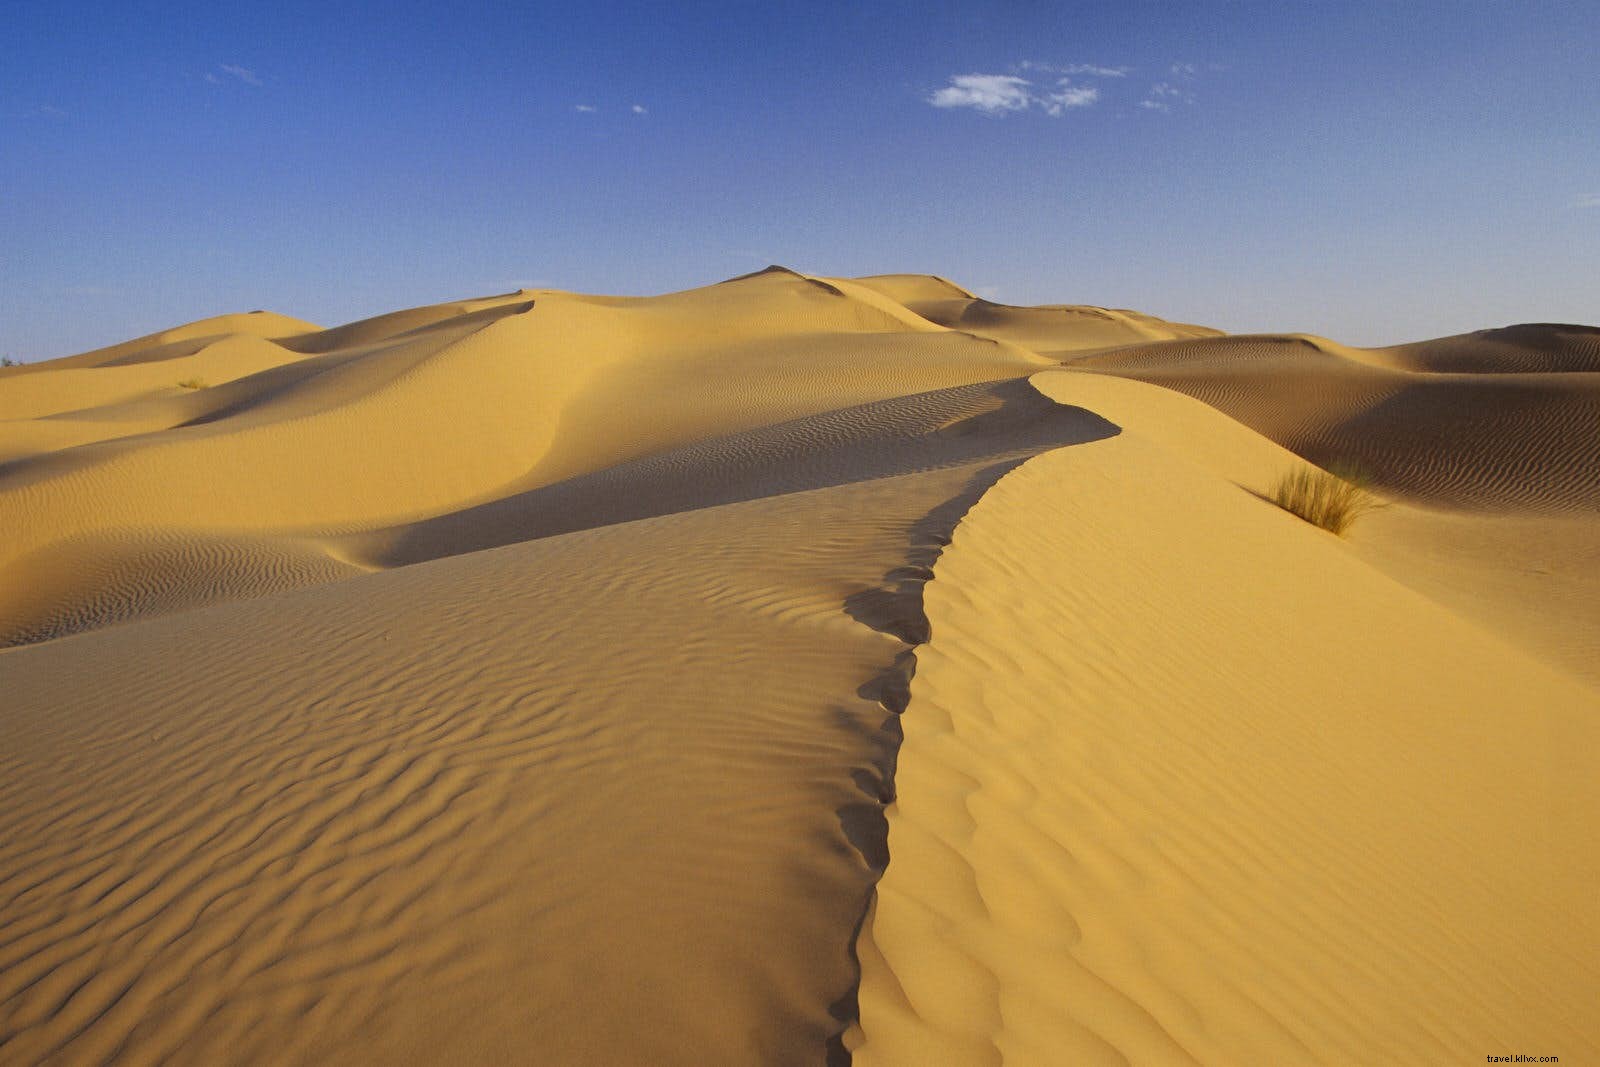 Odisea del desierto:planificación de su viaje al Sahara tunecino 